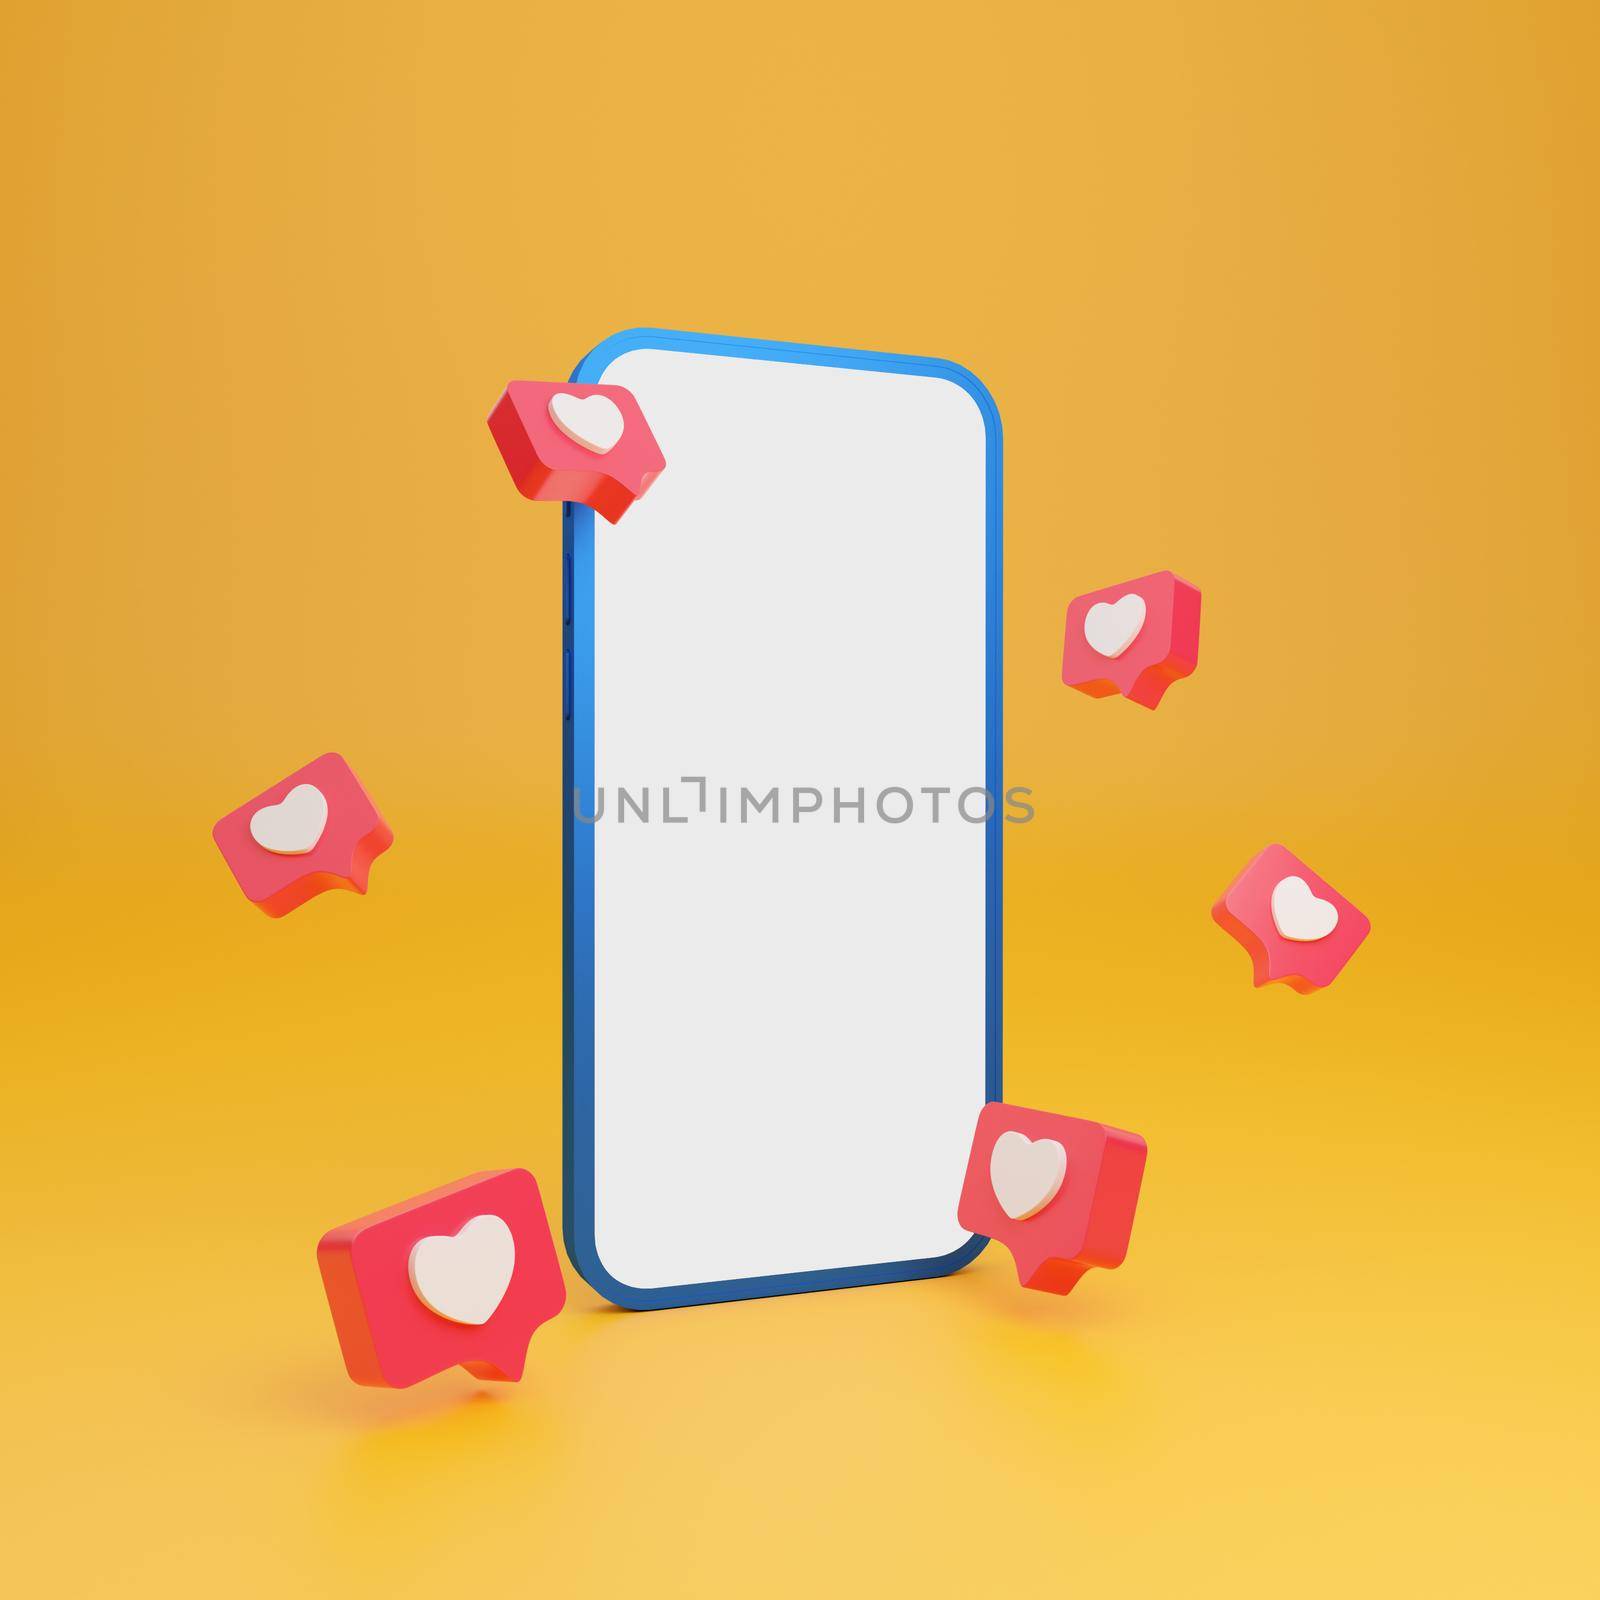 Empty screen smartphone mockup with heart in speech bubble message, 3d illustration by nutzchotwarut